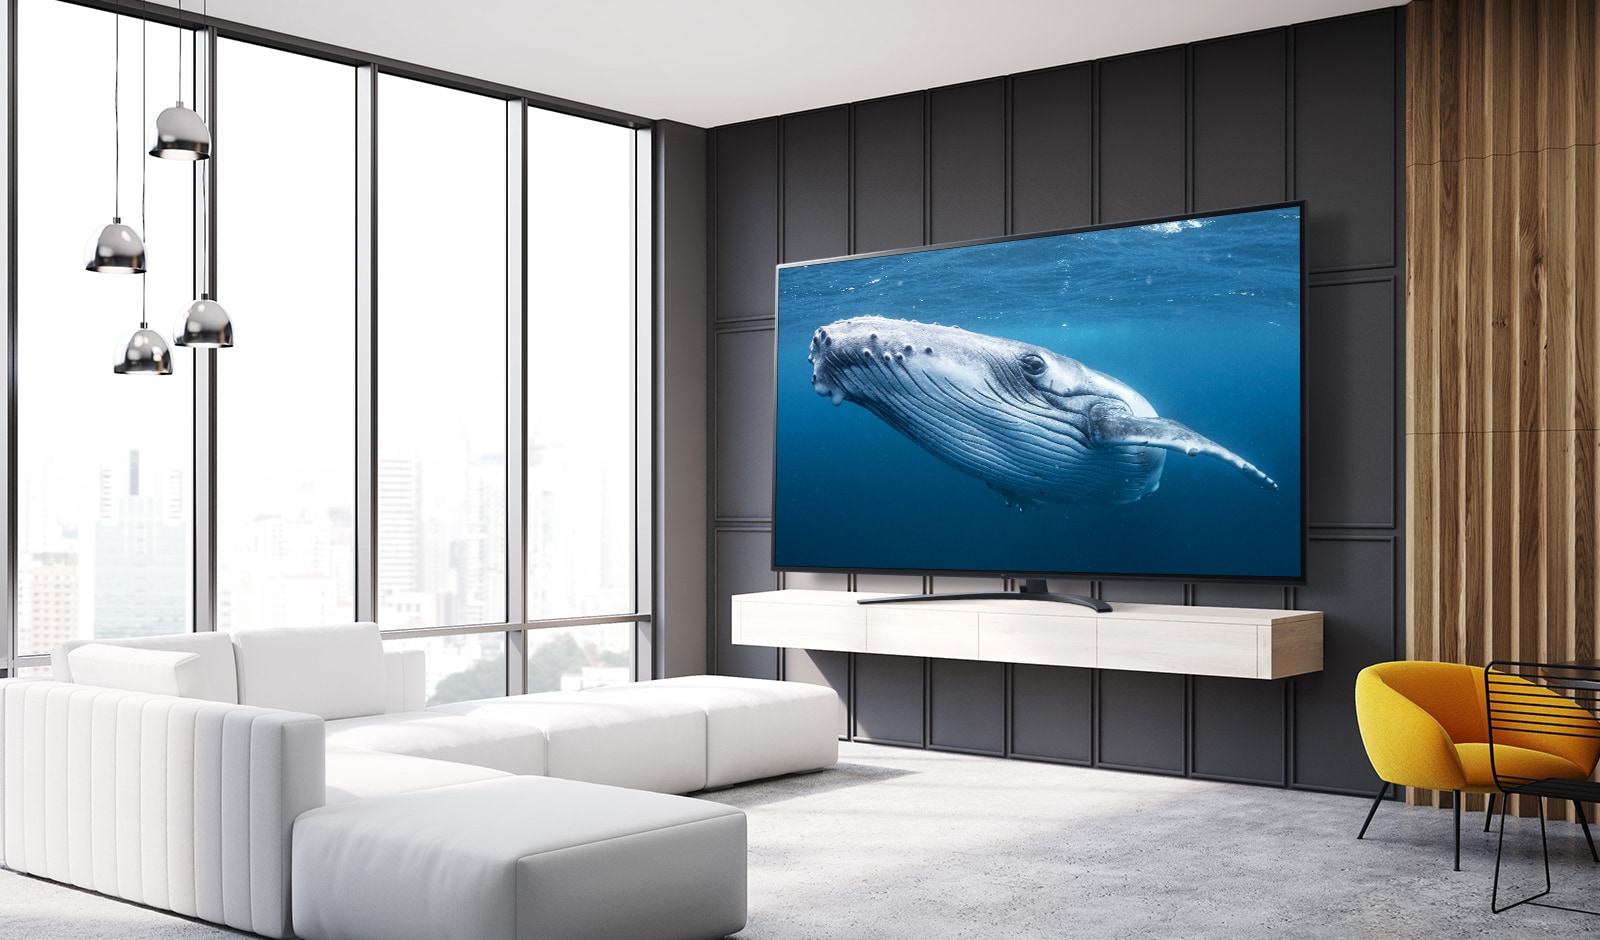 V dnevni sobi je televizor z velikim zaslonom, ki prikazuje sliko velikega kita v morju.